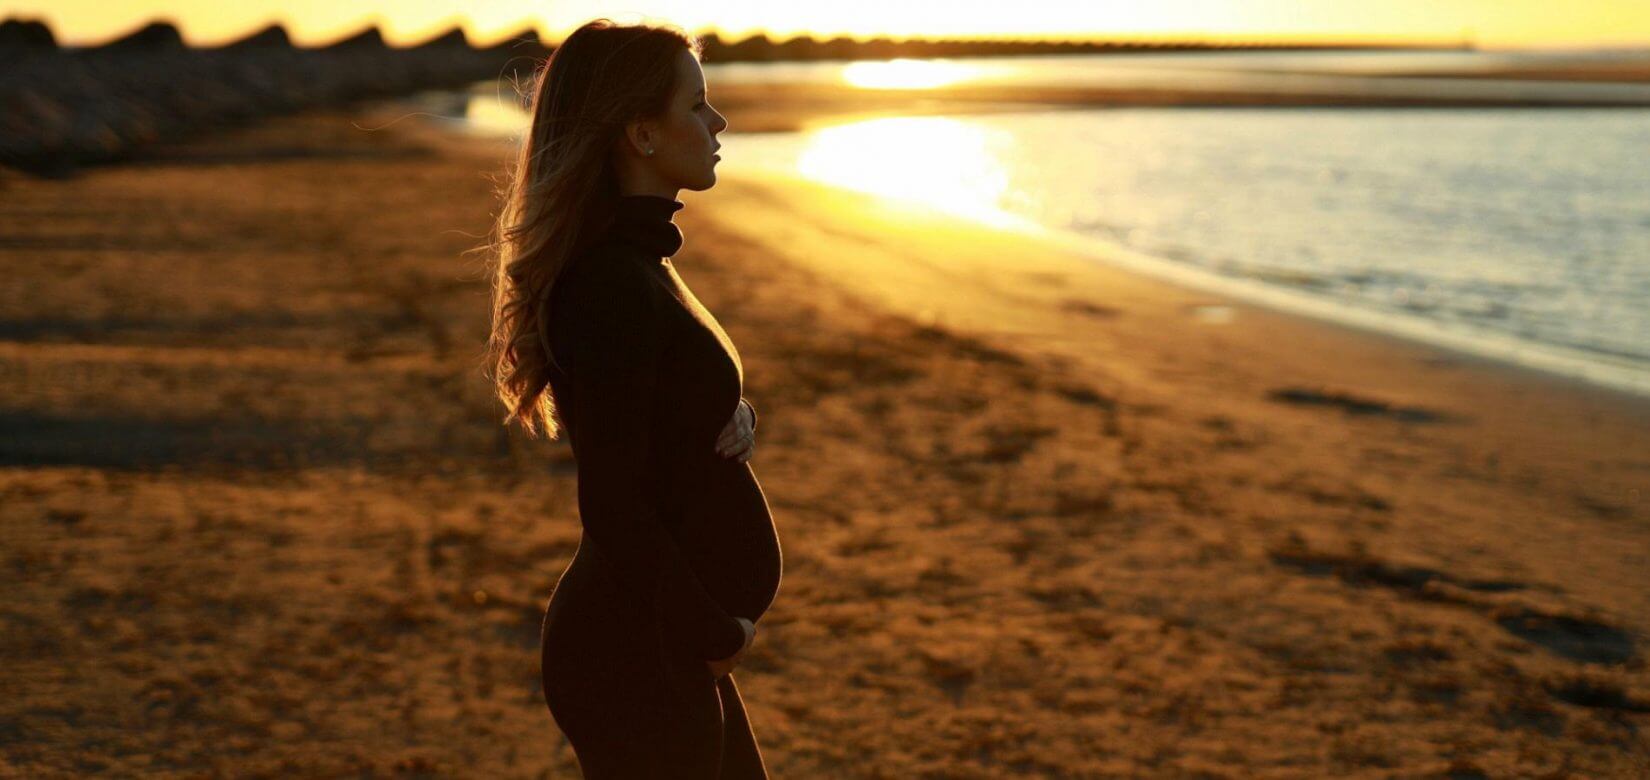 "Ποτέ δεν ήθελα να γίνω μαμά και ξαφνικά μια μέρα ανακάλυψα ότι είμαι έγκυος"